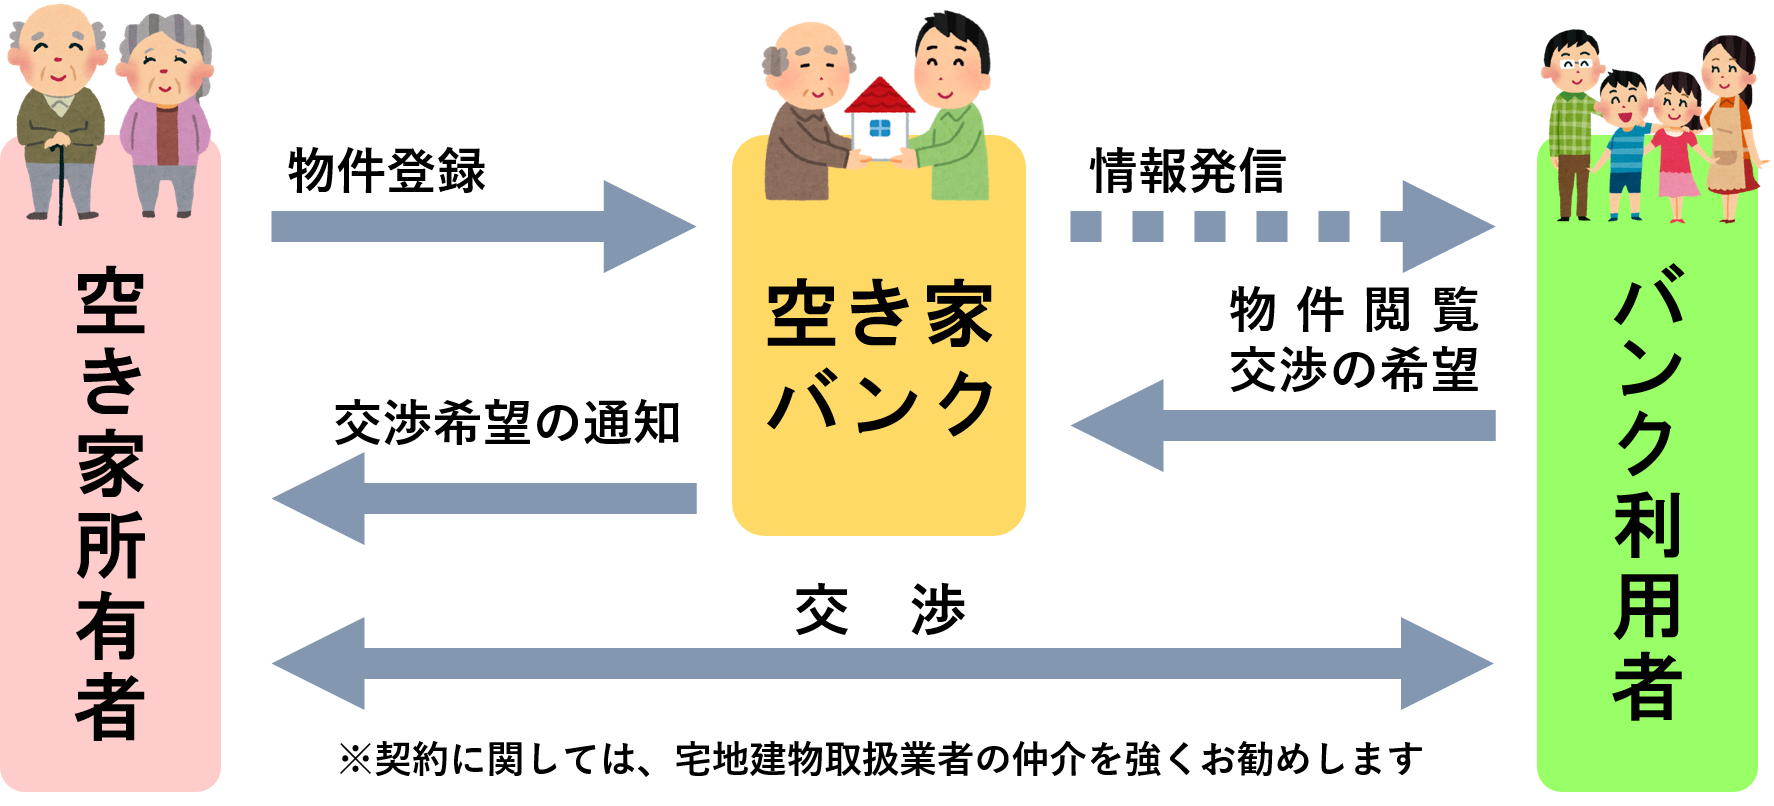 広川町空き家バンクの運用のイメージ図